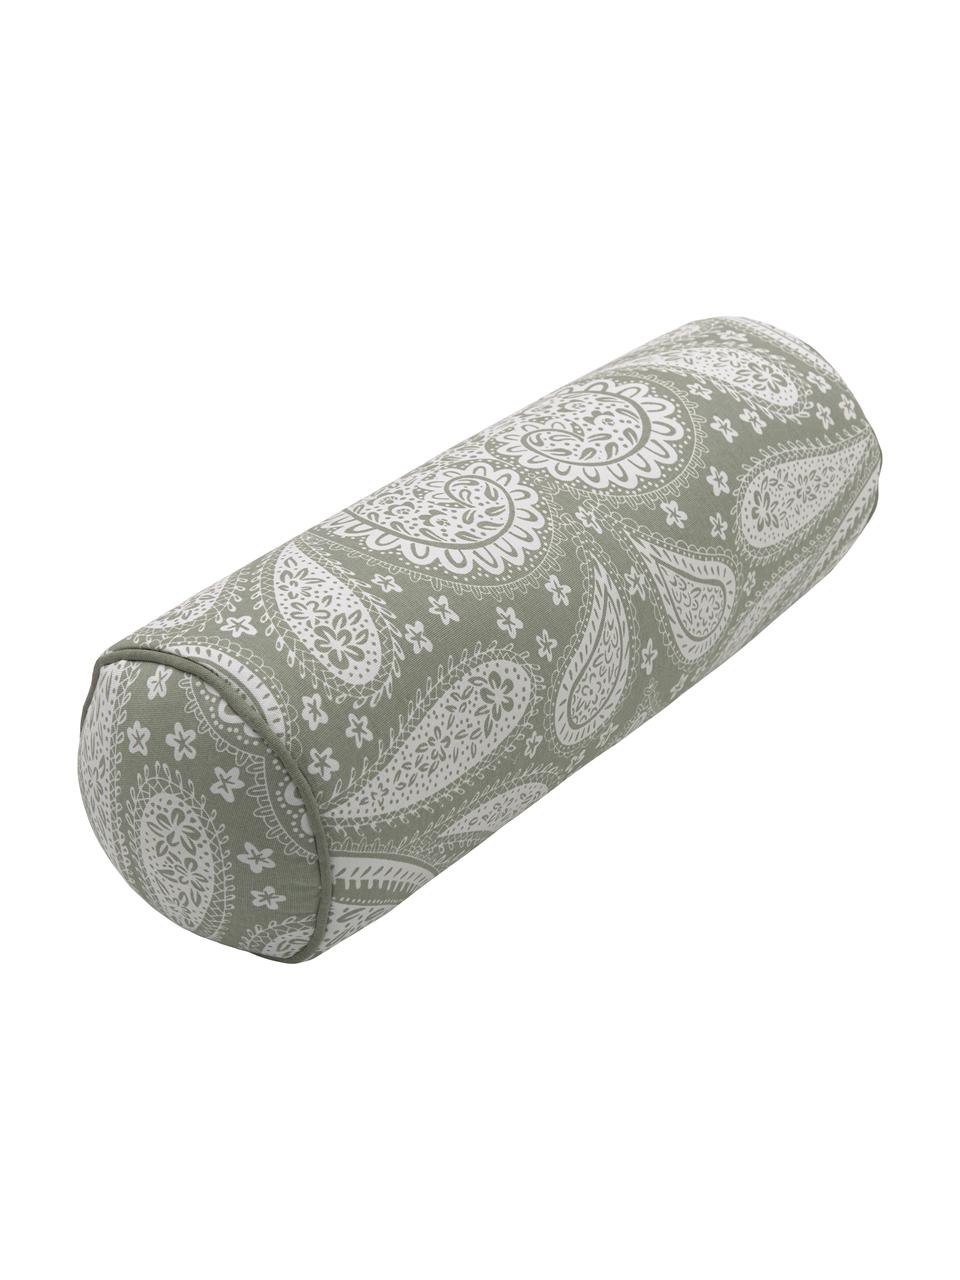 Poduszka wałek z bawełny organicznej Manon, Tapicerka: 100% bawełna organiczna z, Zielony, Ø 18 cm D 50 cm